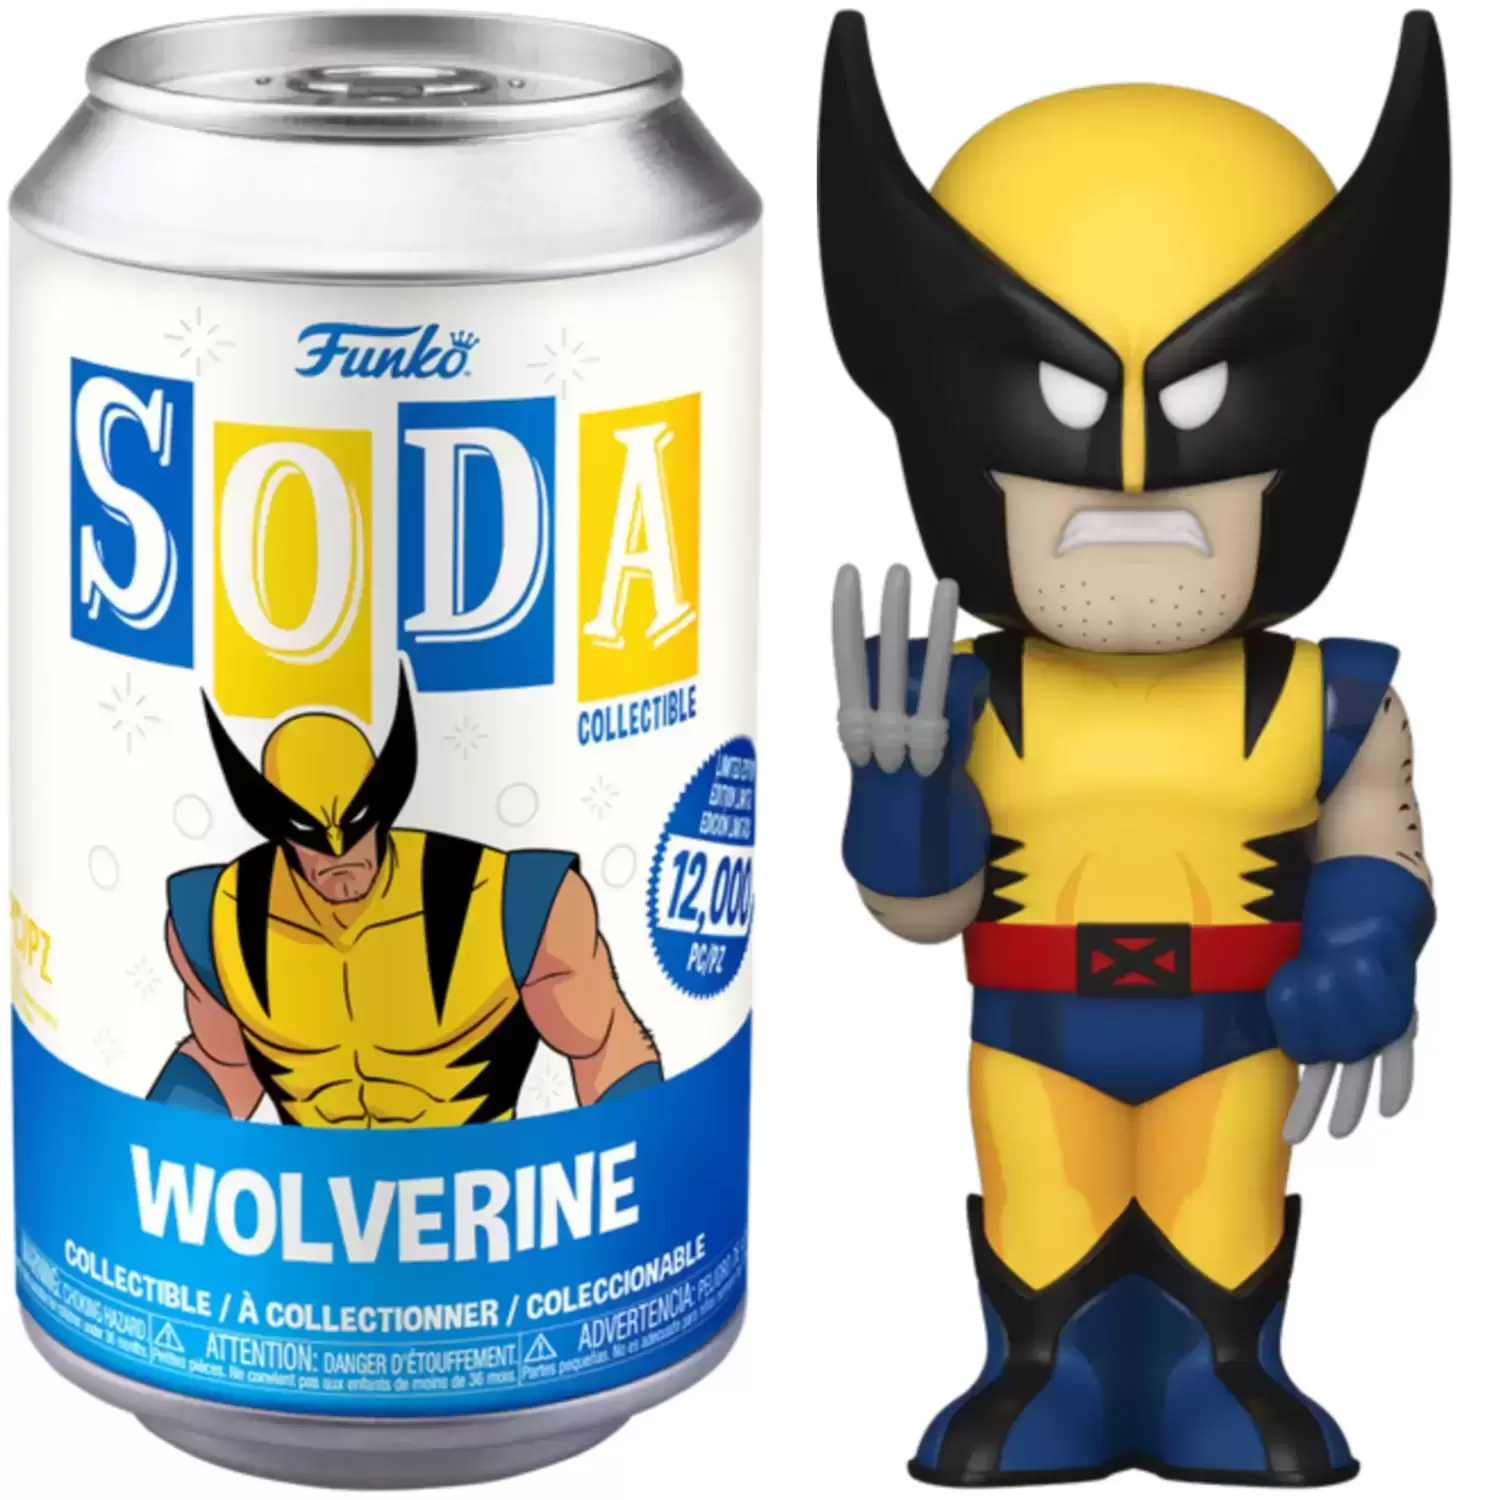 Vinyl Soda! - Wolverine